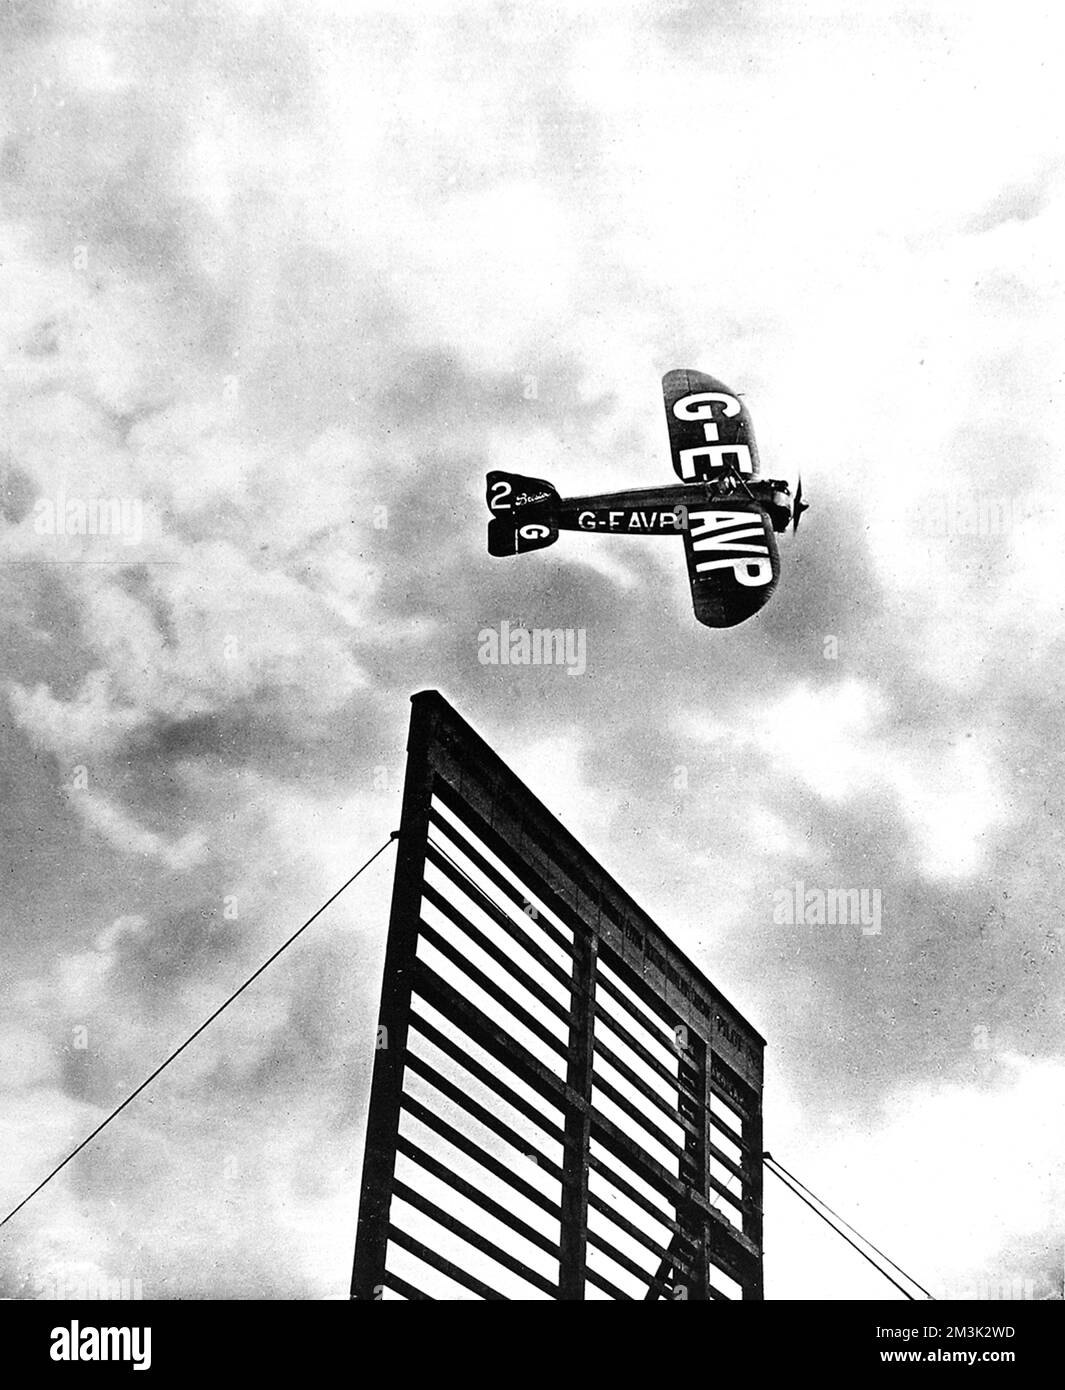 Monoplanare 'Lucifer', pilotato da L.L. Carter, attraversando la 'linea' per prendere il primo posto nella corsa Aerial Derby handicap, Croydon, 1922. 1922 Foto Stock